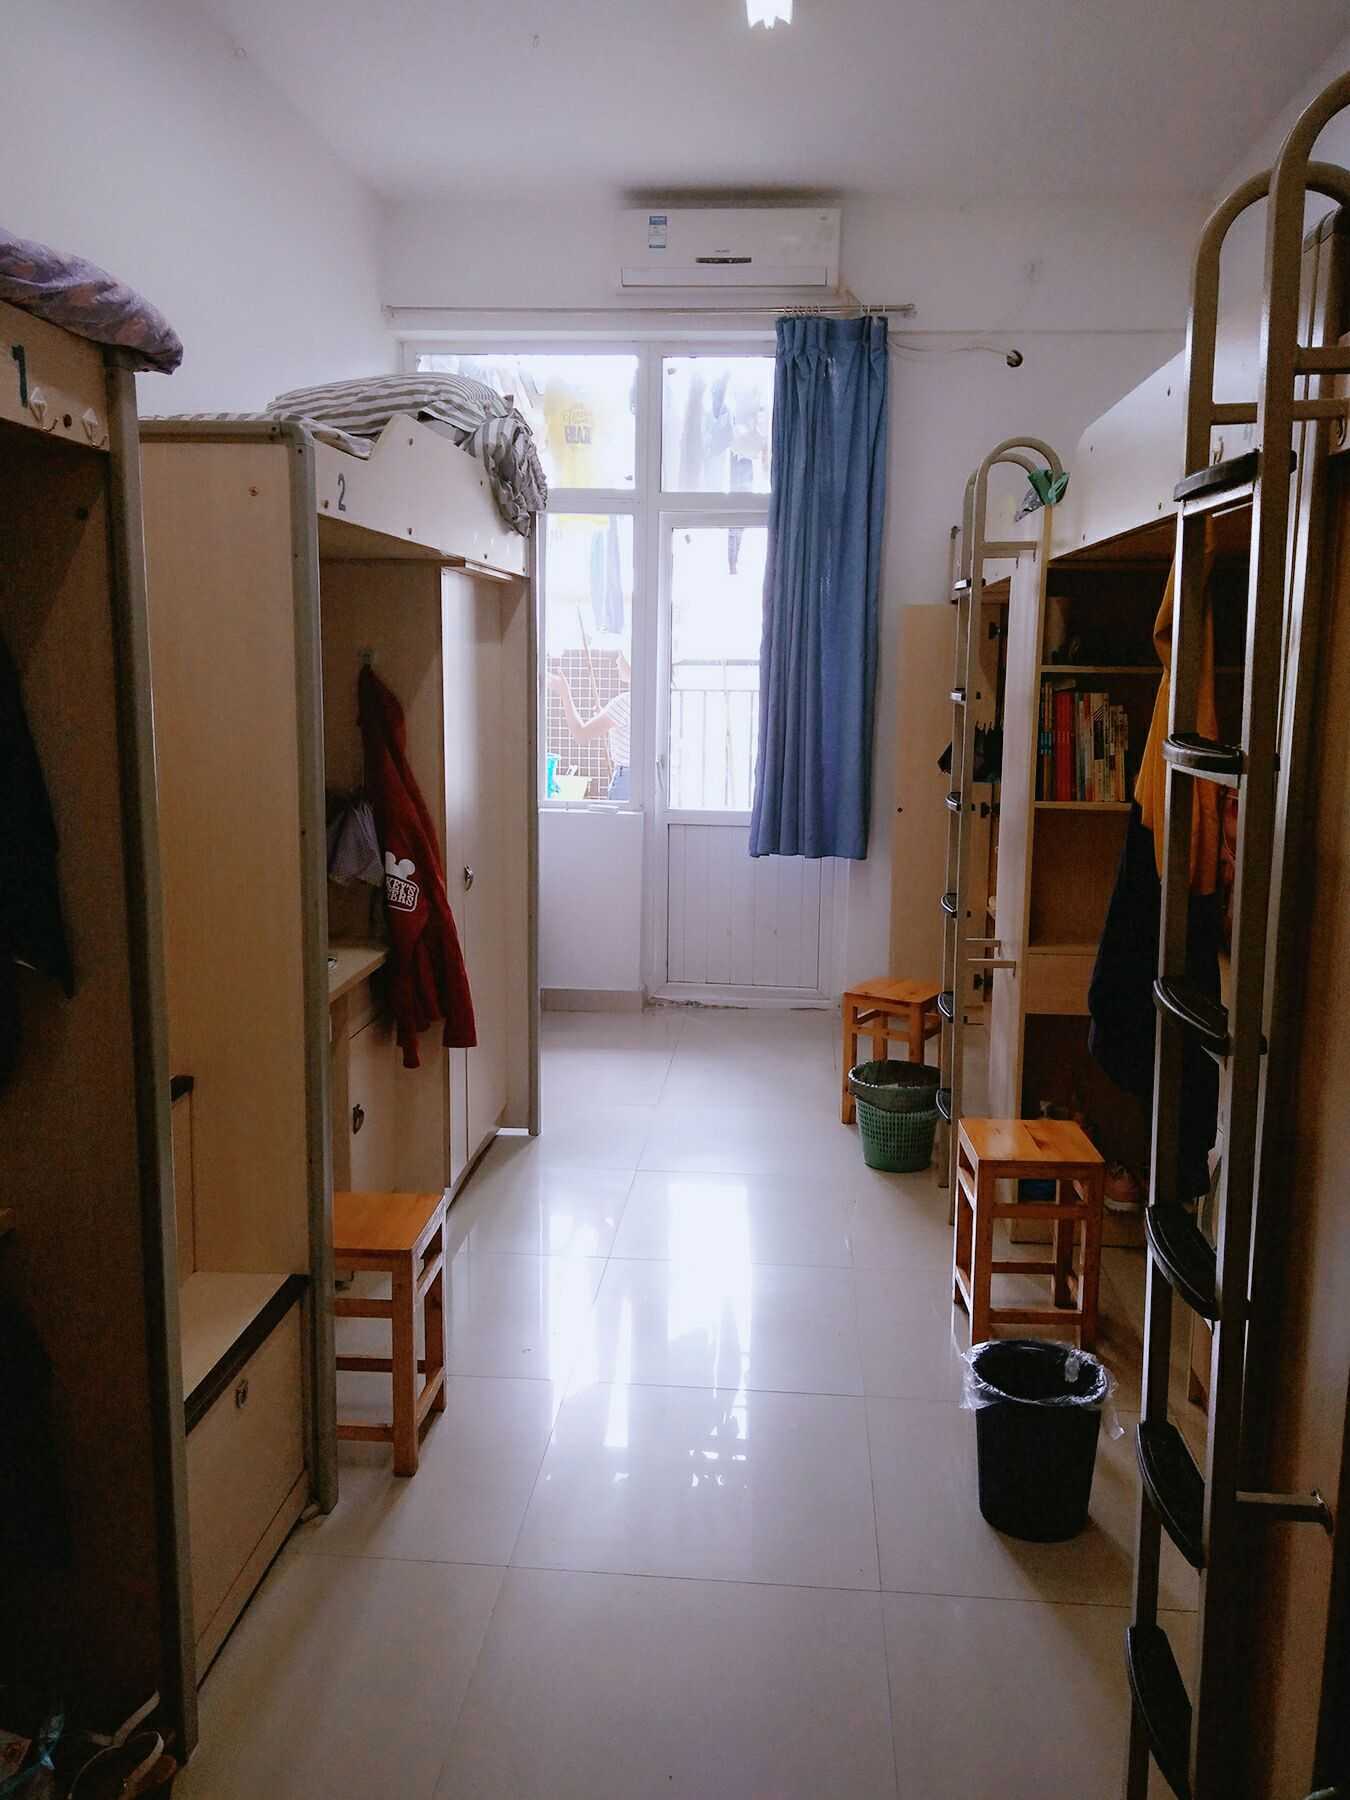 上海杉达学院女生宿舍图片